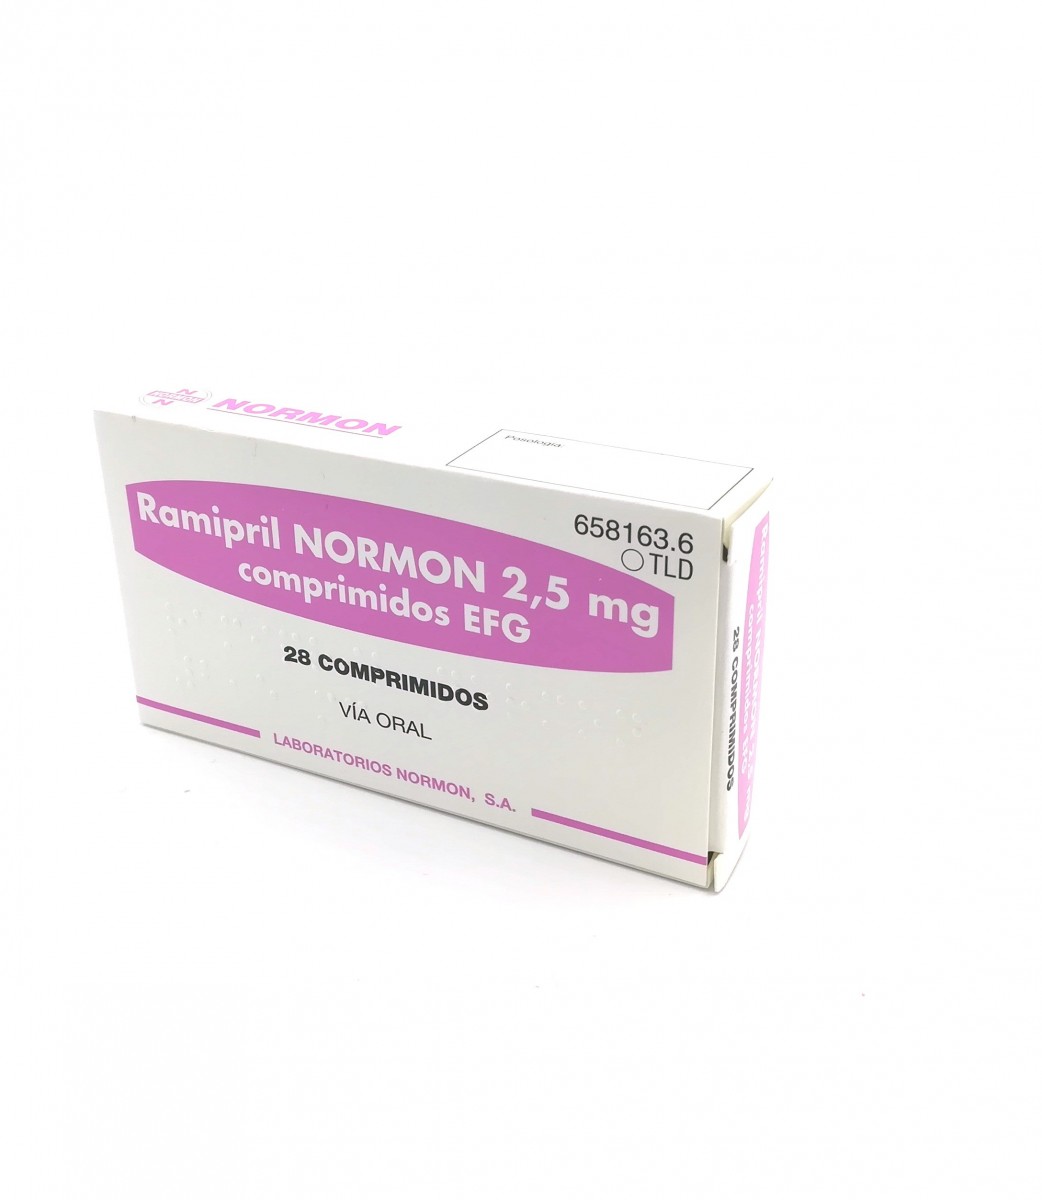 RAMIPRIL NORMON 2,5 mg COMPRIMIDOS EFG,56 comprimidos fotografía del envase.